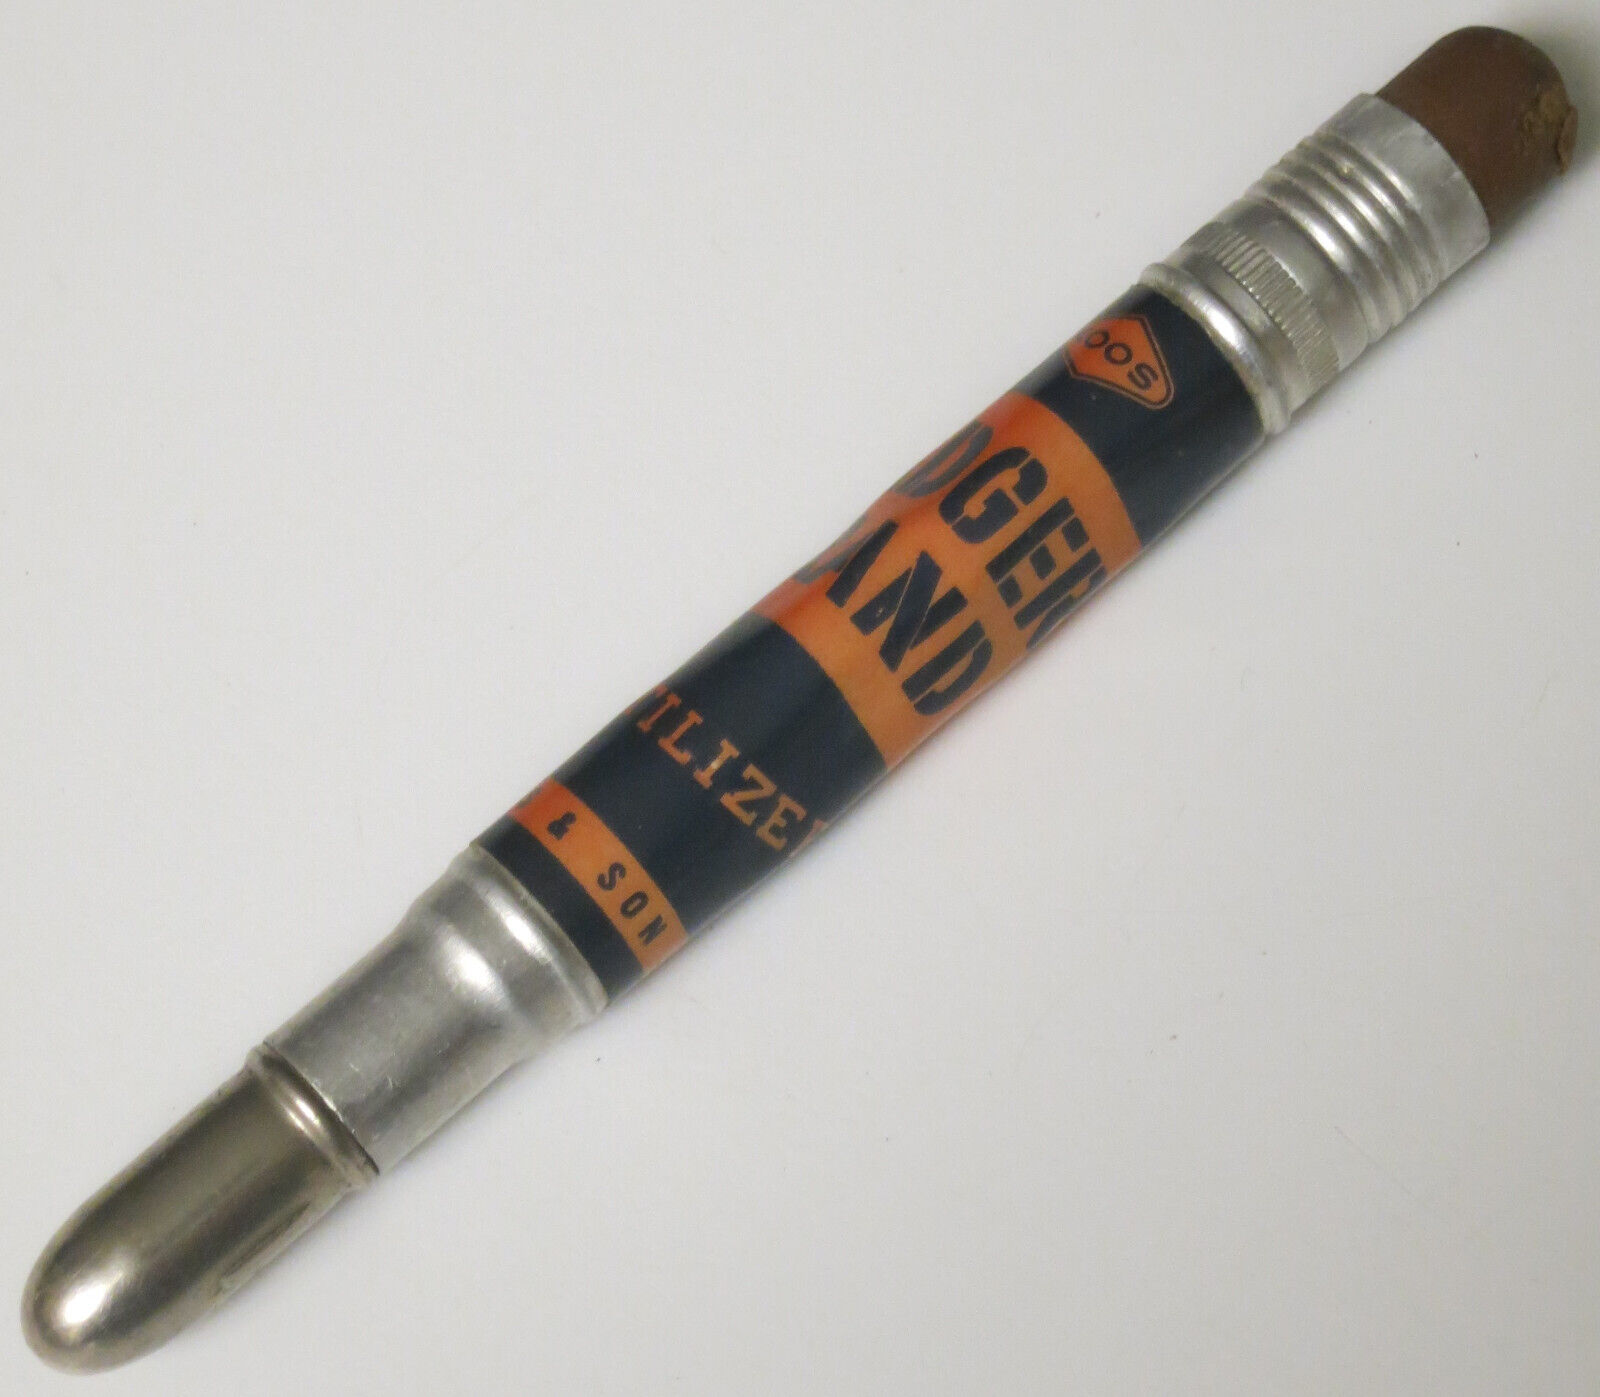 Bullet Pencil BADGER BRAND FERTILIZER Koos & Son Co. VINTAGE Advertising